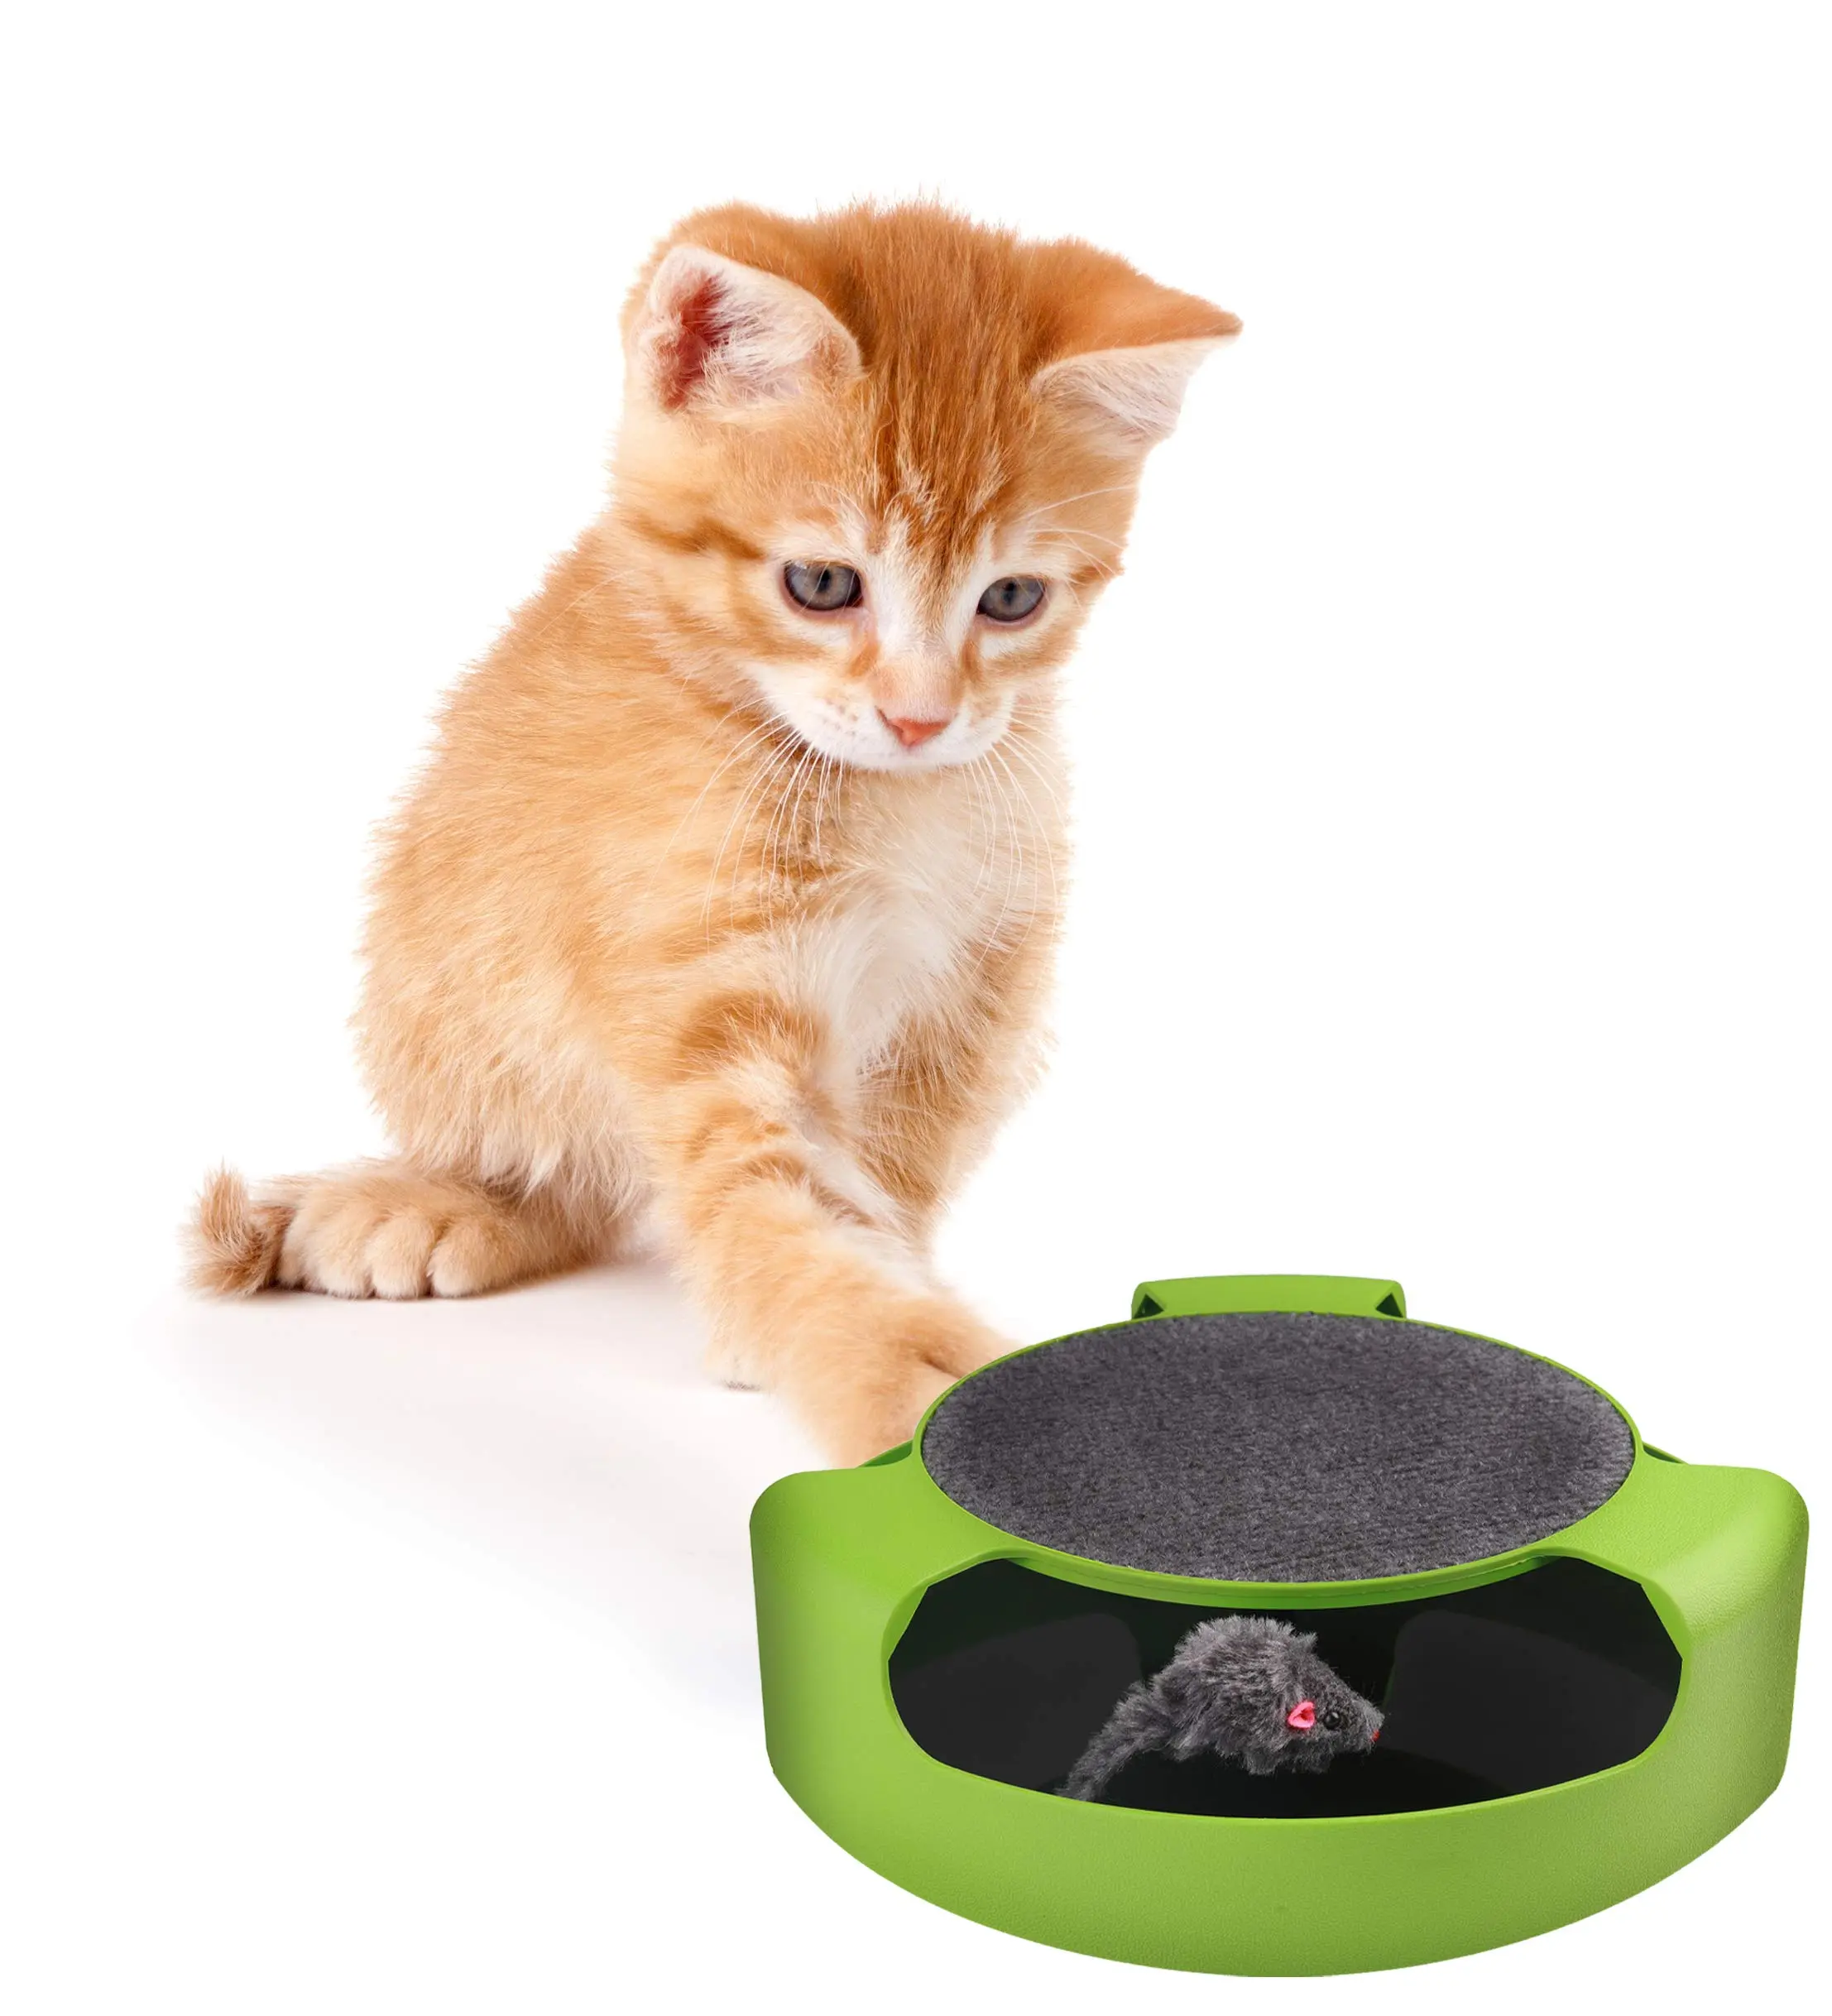 atrapa al raton juego para gatos - Cómo hacer que un gato atrapa ratones